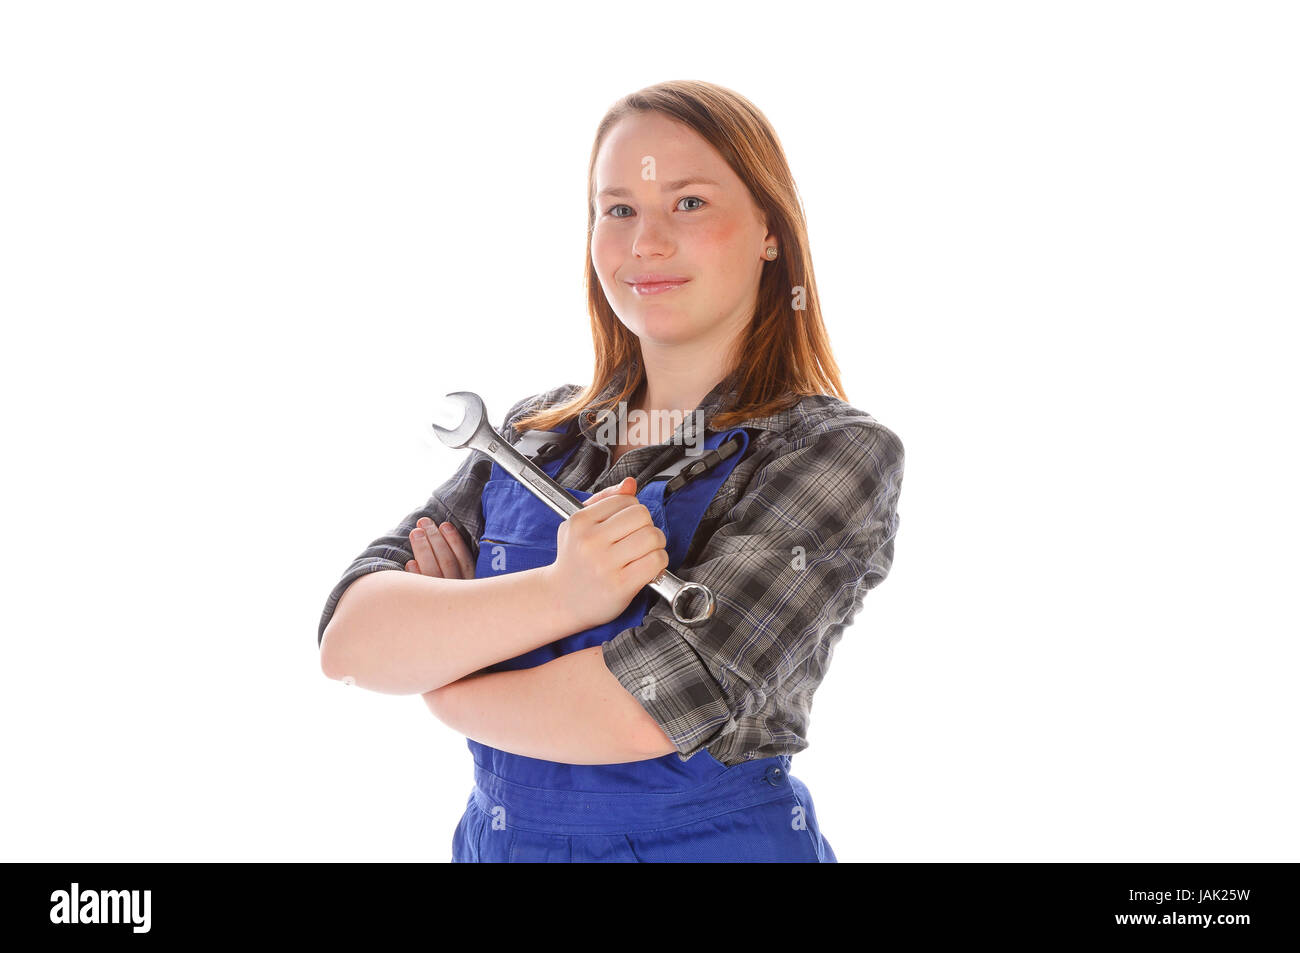 Junge Frau (Handwerkerin, Heimwerkerin, Auszubildende) mit langen Haaren trägt eine karierte Bluse und eine blaue Arbeits-Latzhose vor weißem Hintergrund. Sie hält einen großen Schraubenschlüssel (Maulschlüssel) in der Hand und lächelt zufrieden. Stock Photo